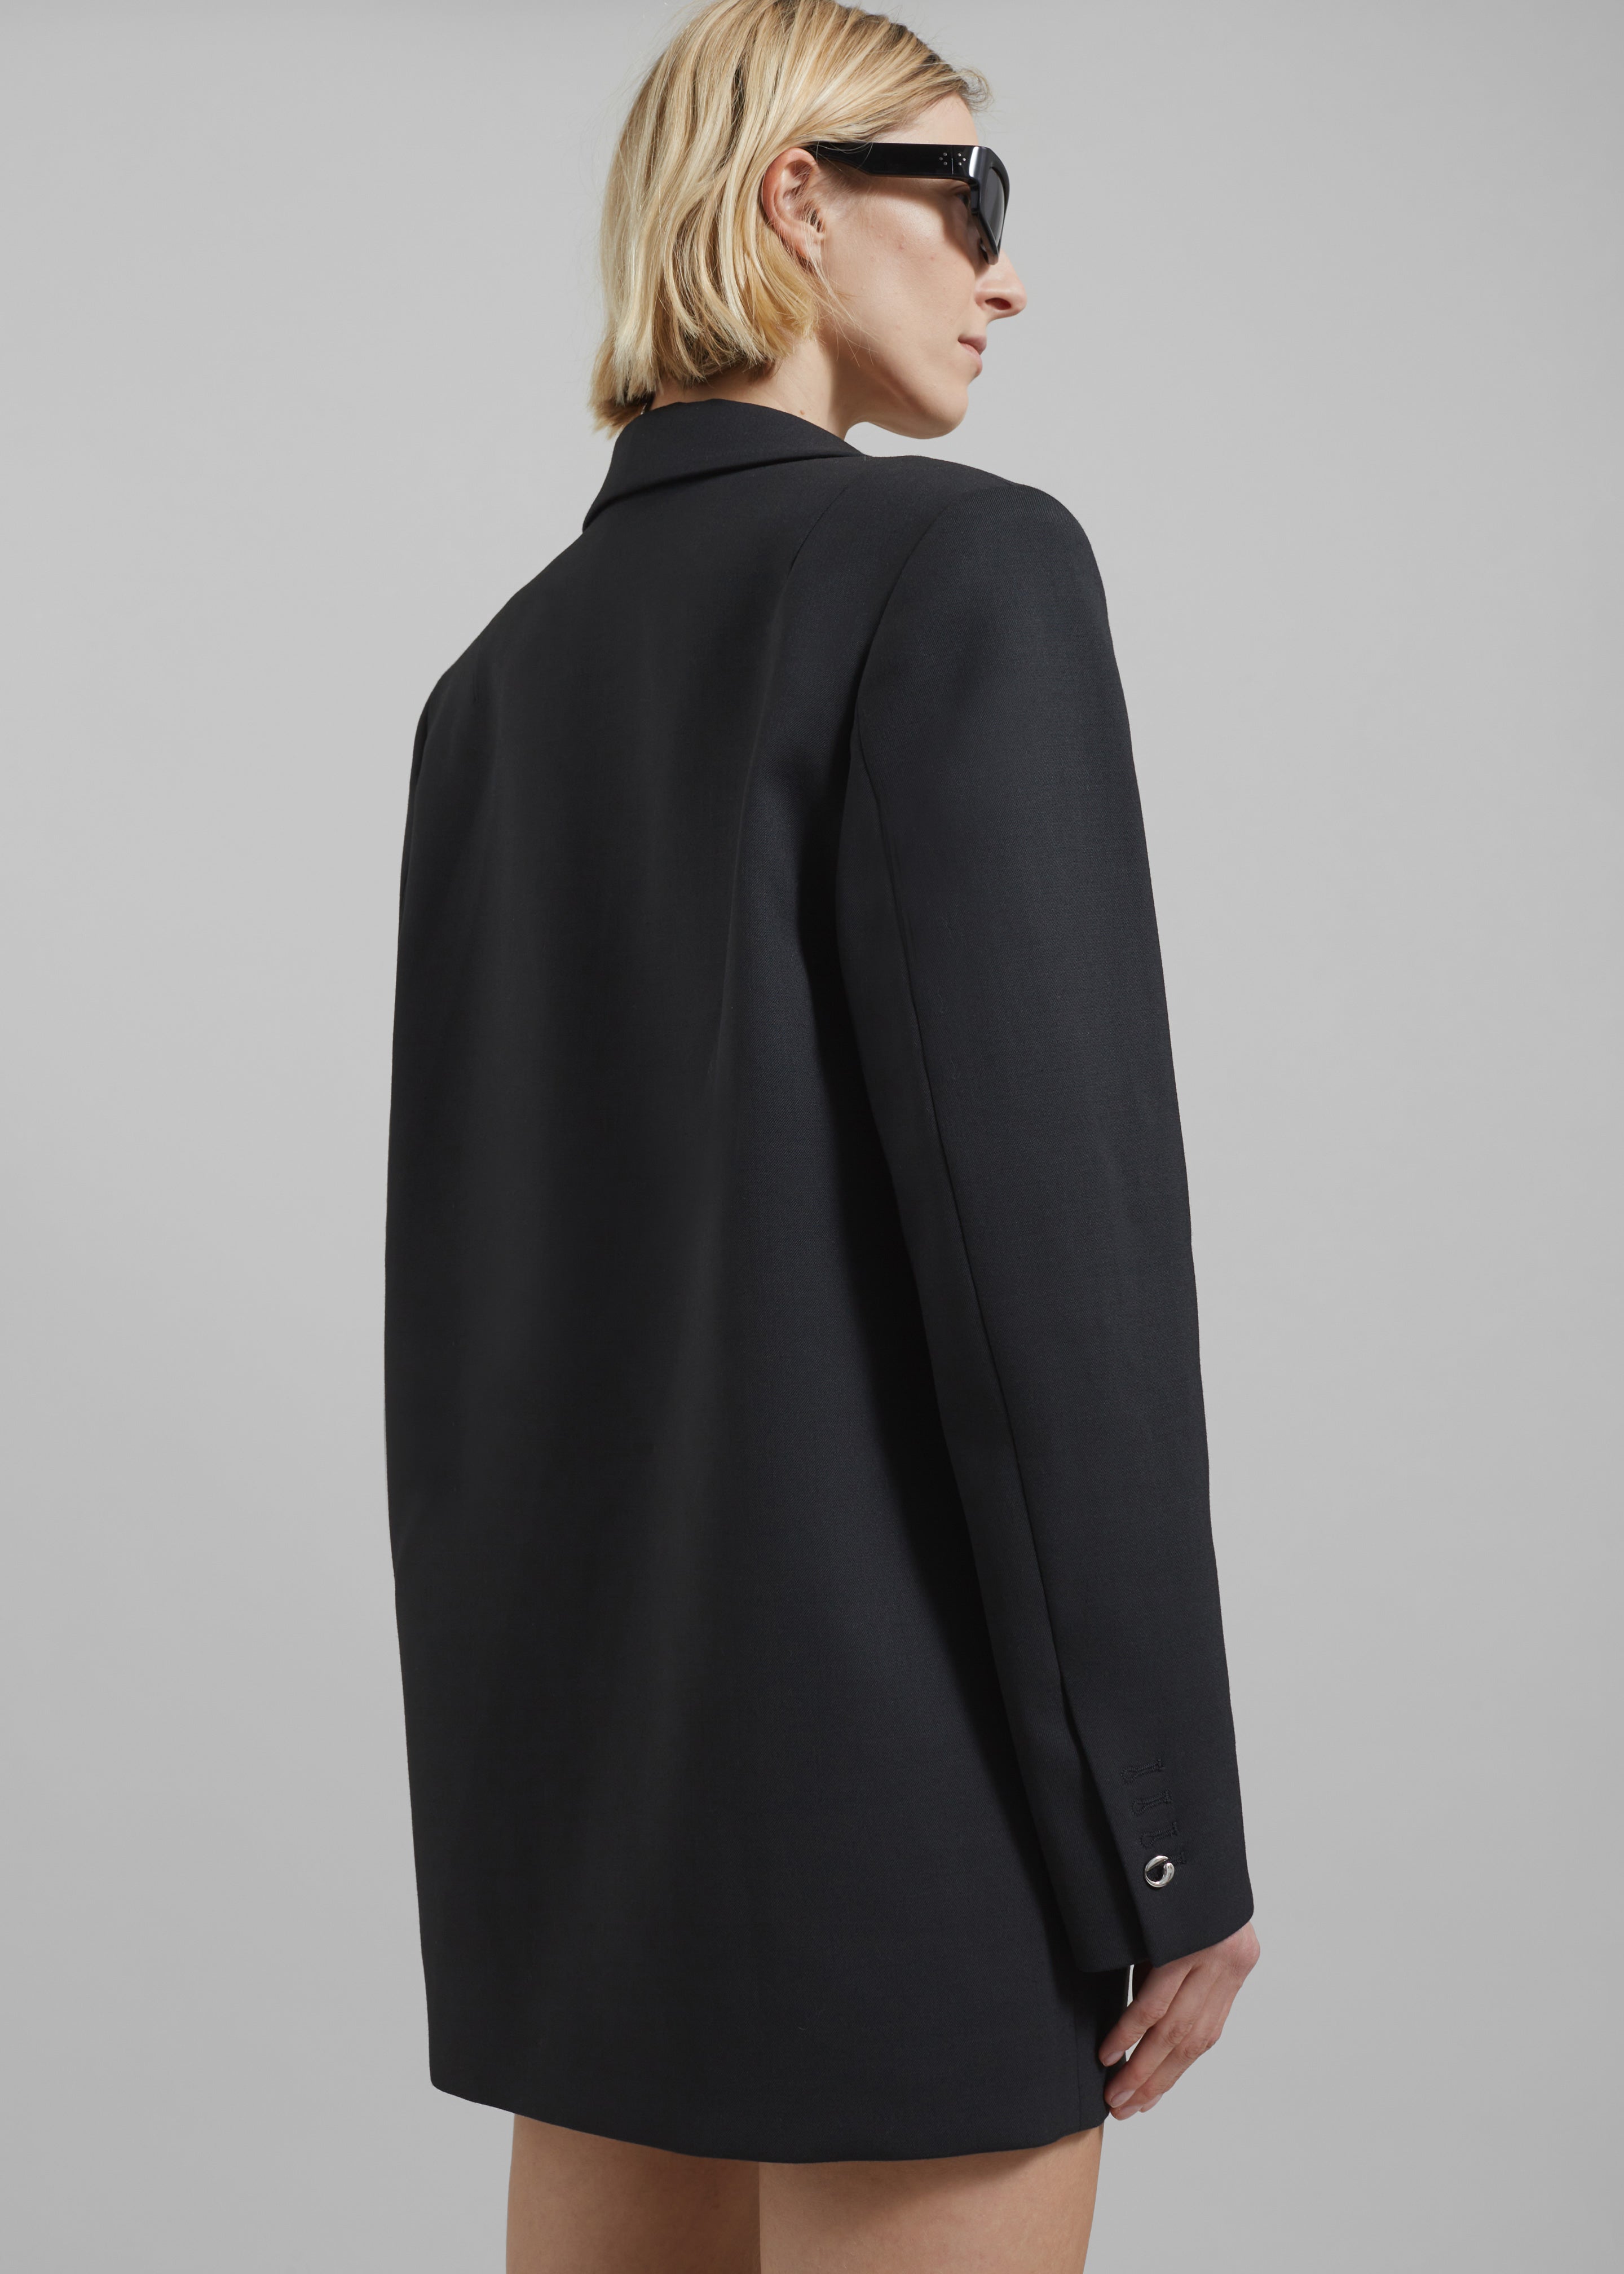 Coperni Oversized Tailored Jacket Dress - Black - 6